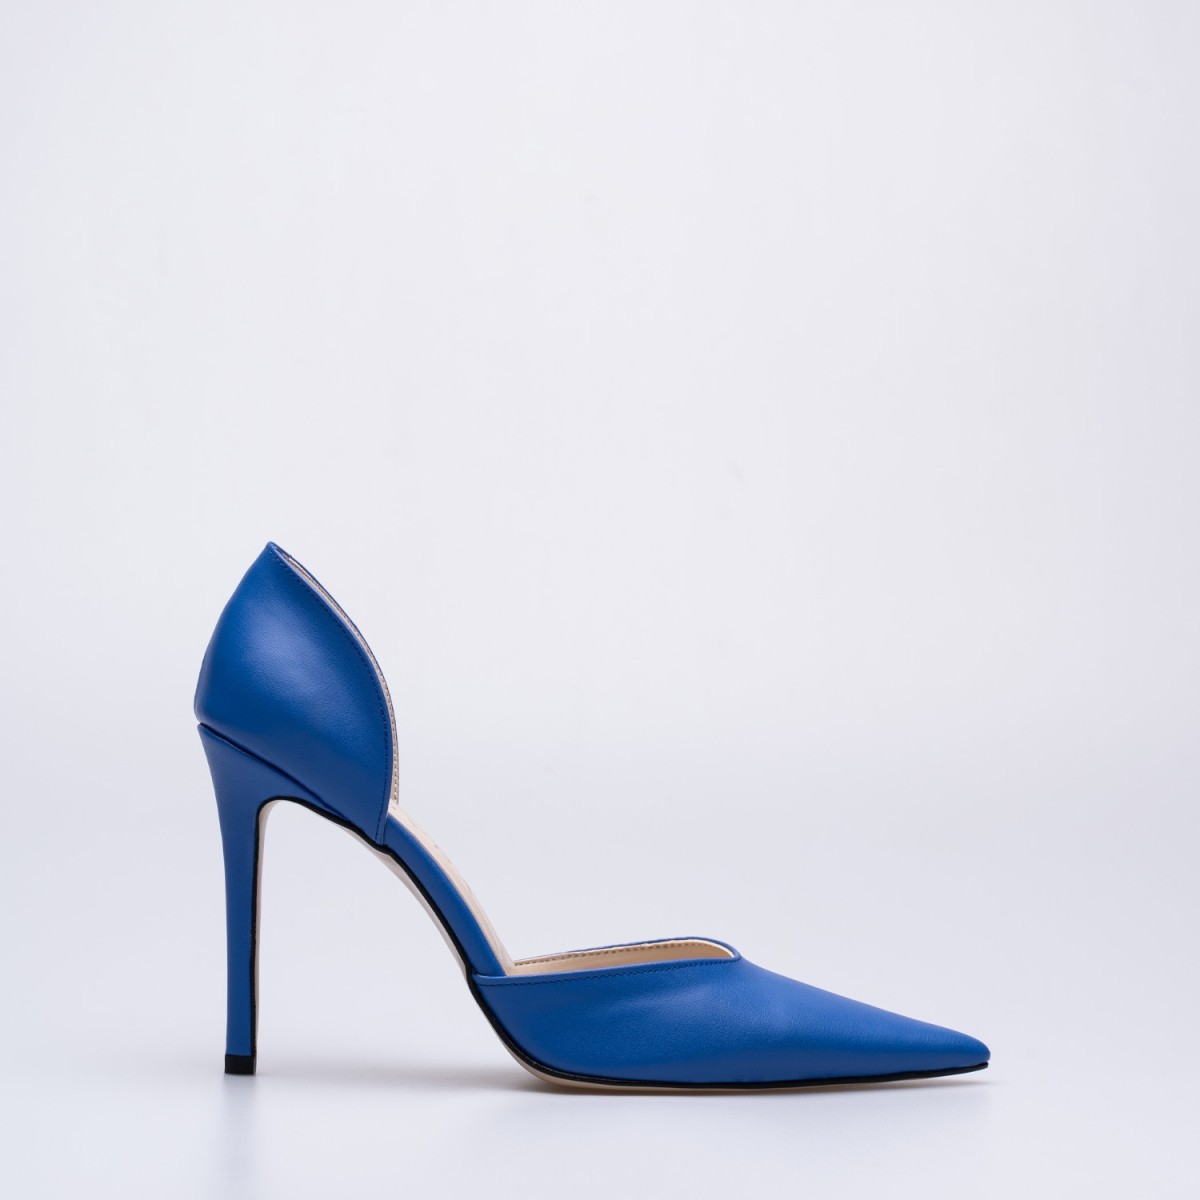 Eleanor İnce Yüksek Topuklu Ayakkabı Stiletto Mavi